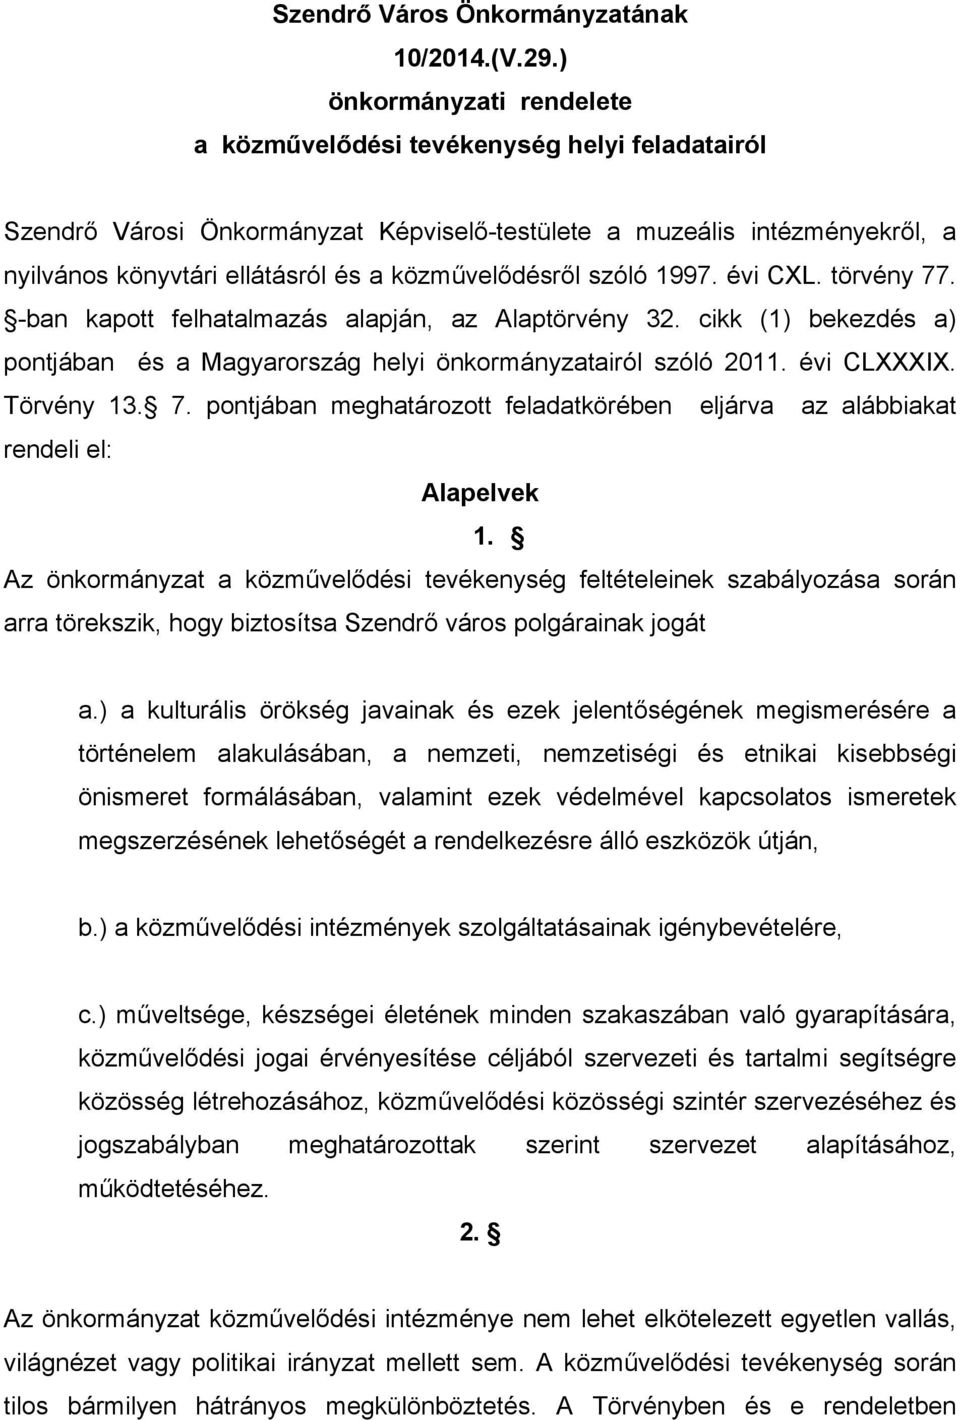 közművelődésről szóló 1997. évi CXL. törvény 77. -ban kapott felhatalmazás alapján, az Alaptörvény 32. cikk (1) bekezdés a) pontjában és a Magyarország helyi önkormányzatairól szóló 2011. évi CLXXXIX.